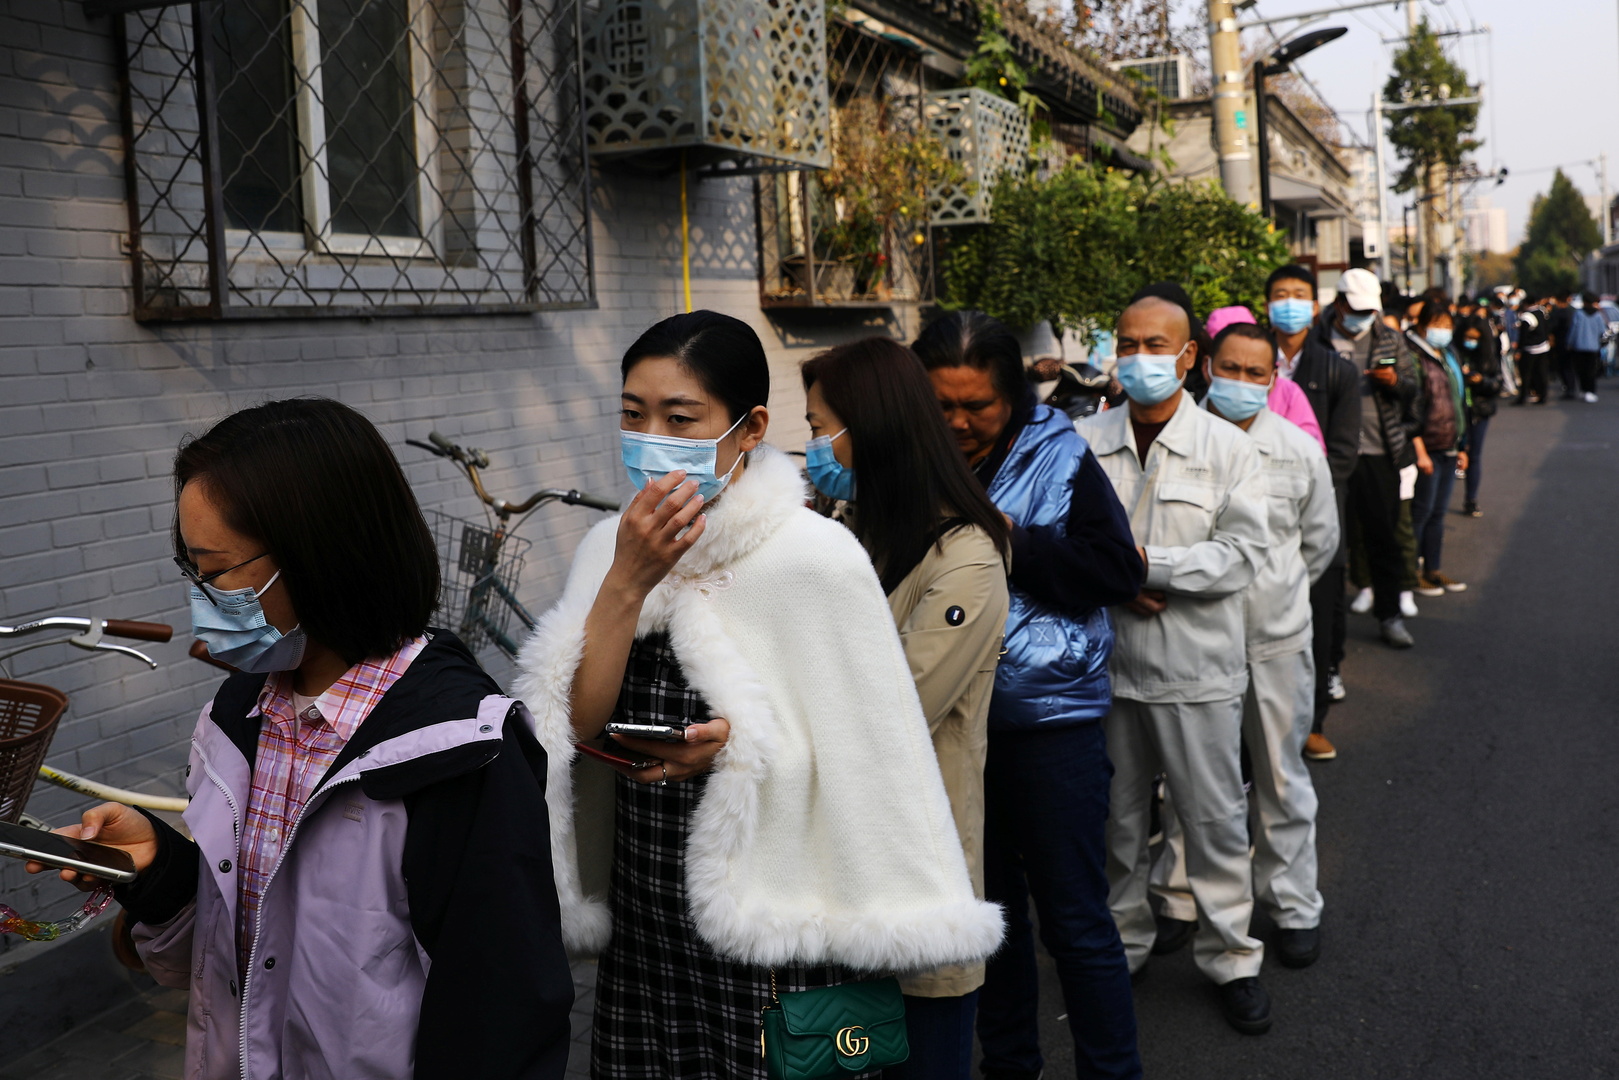 78 إصابة جديدة مؤكدة بفيروس كورونا في الصين